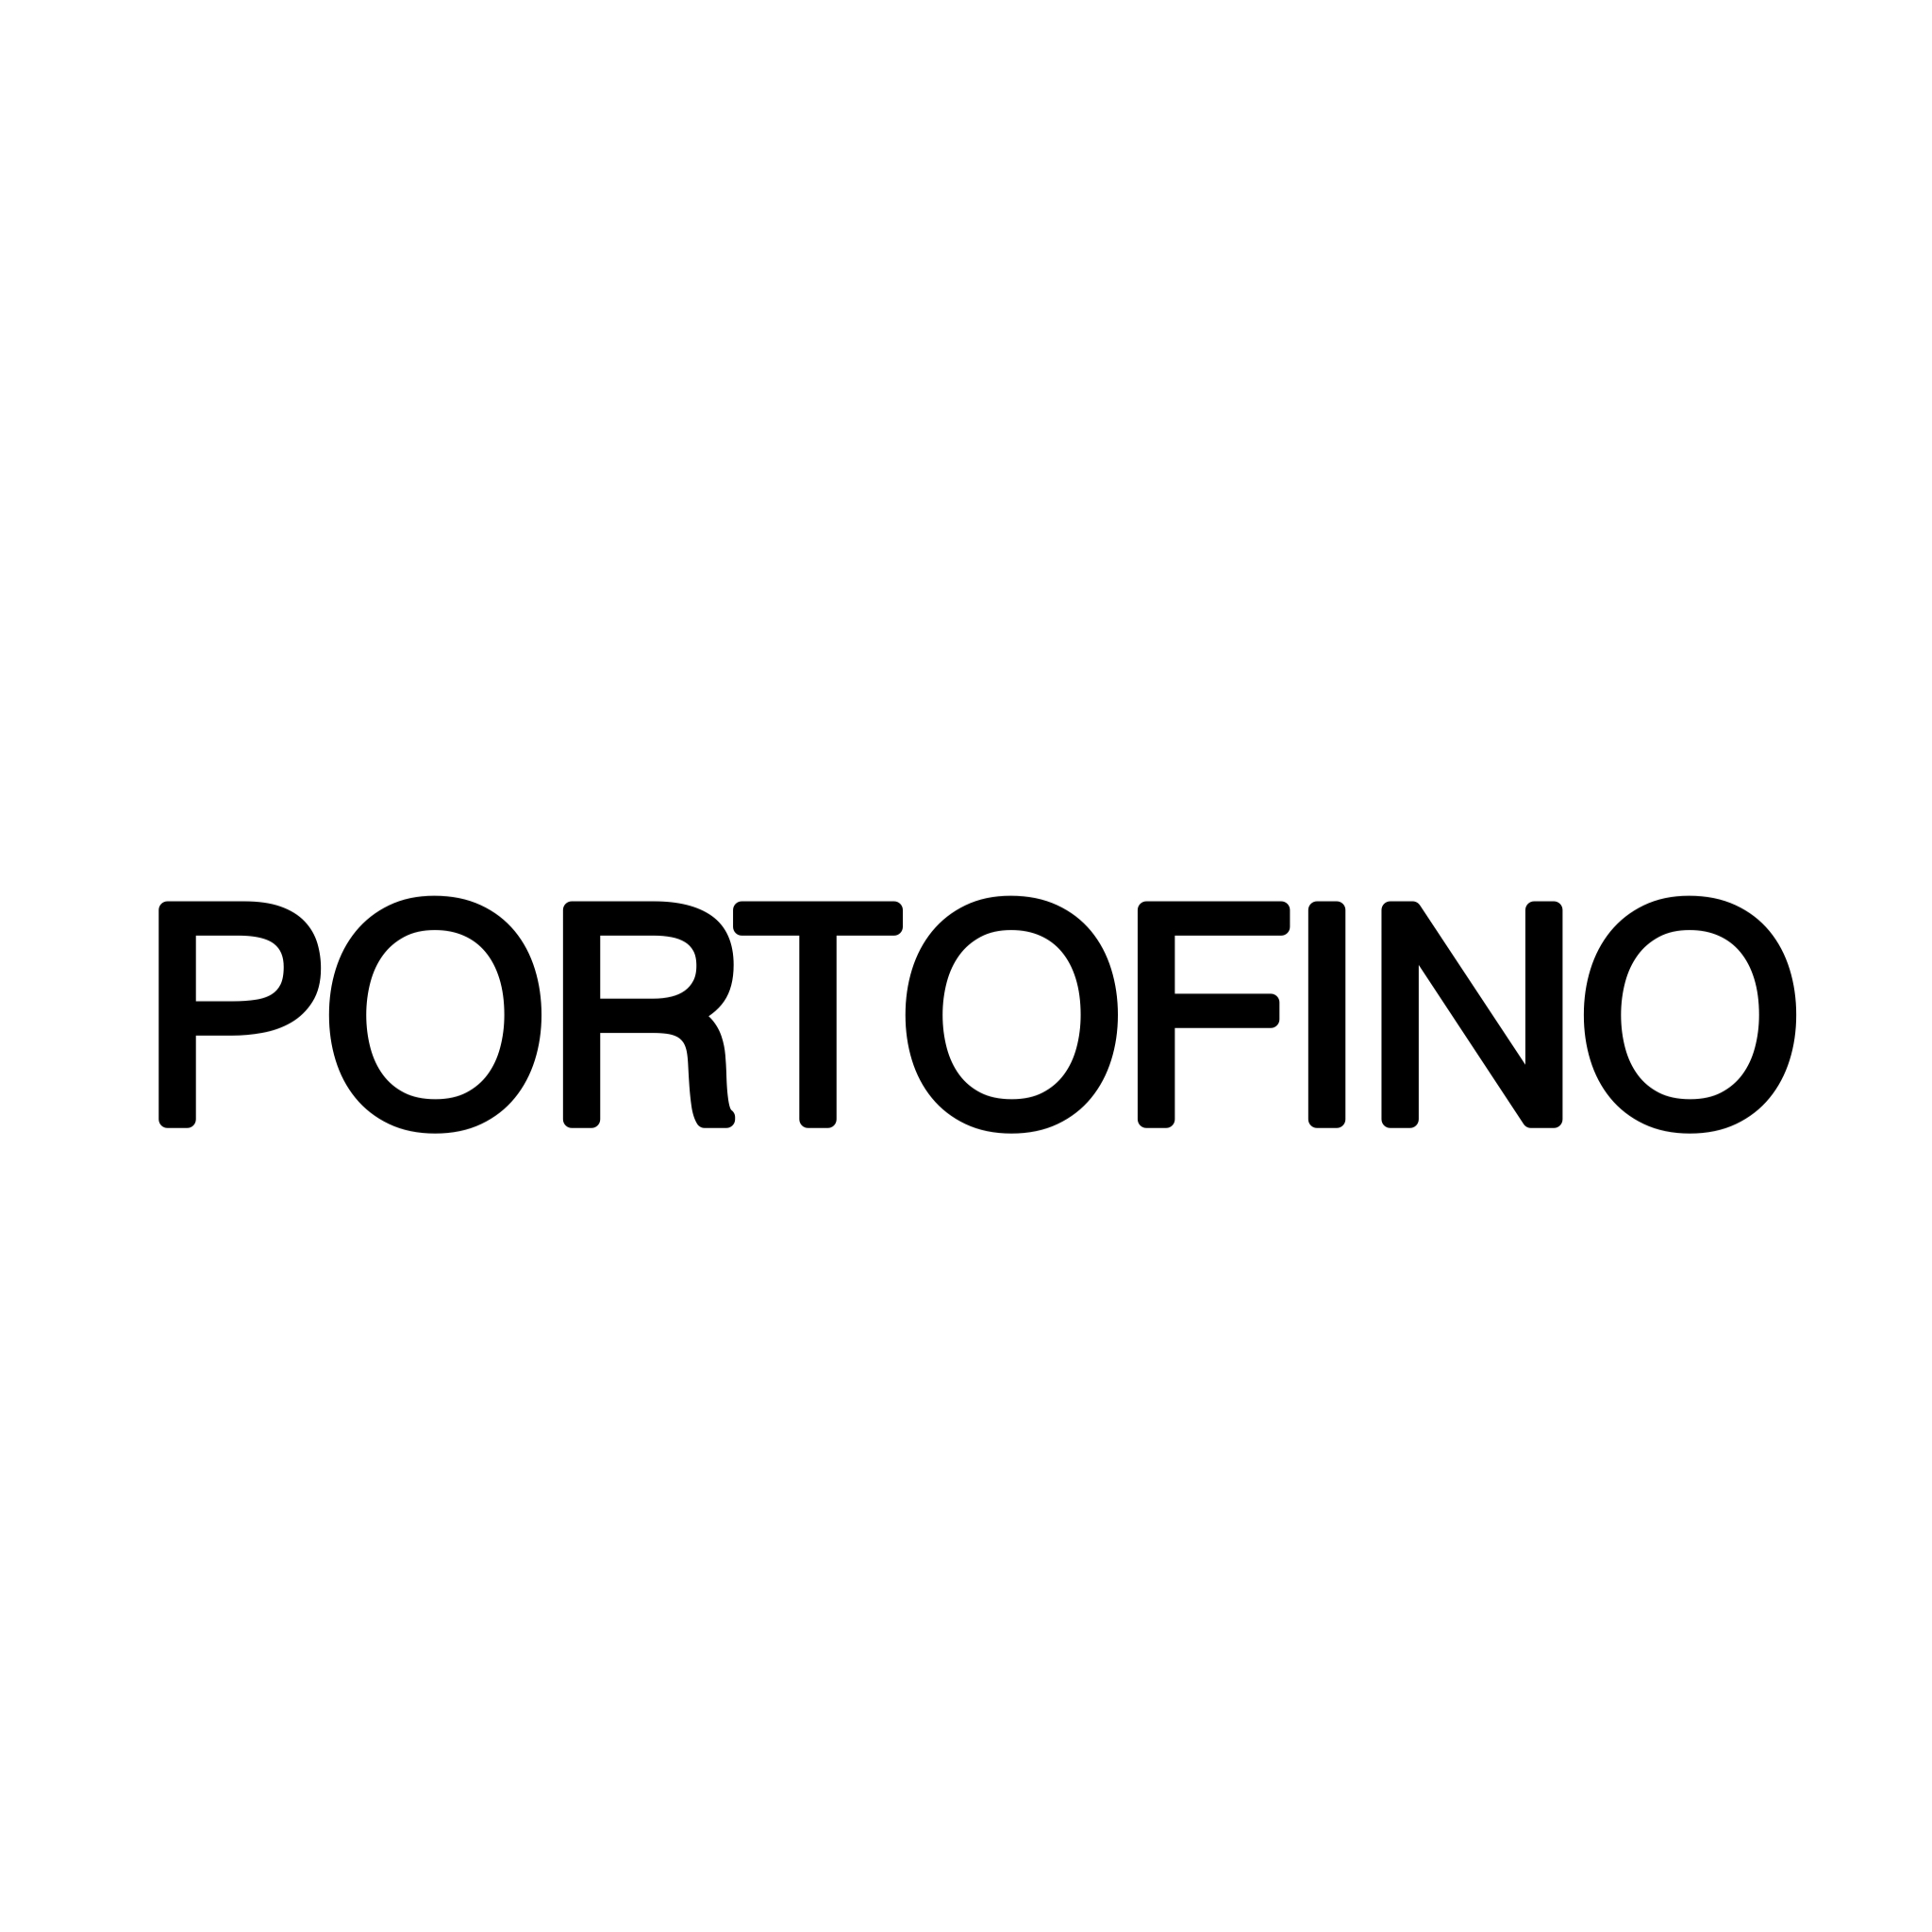 Portofino logo